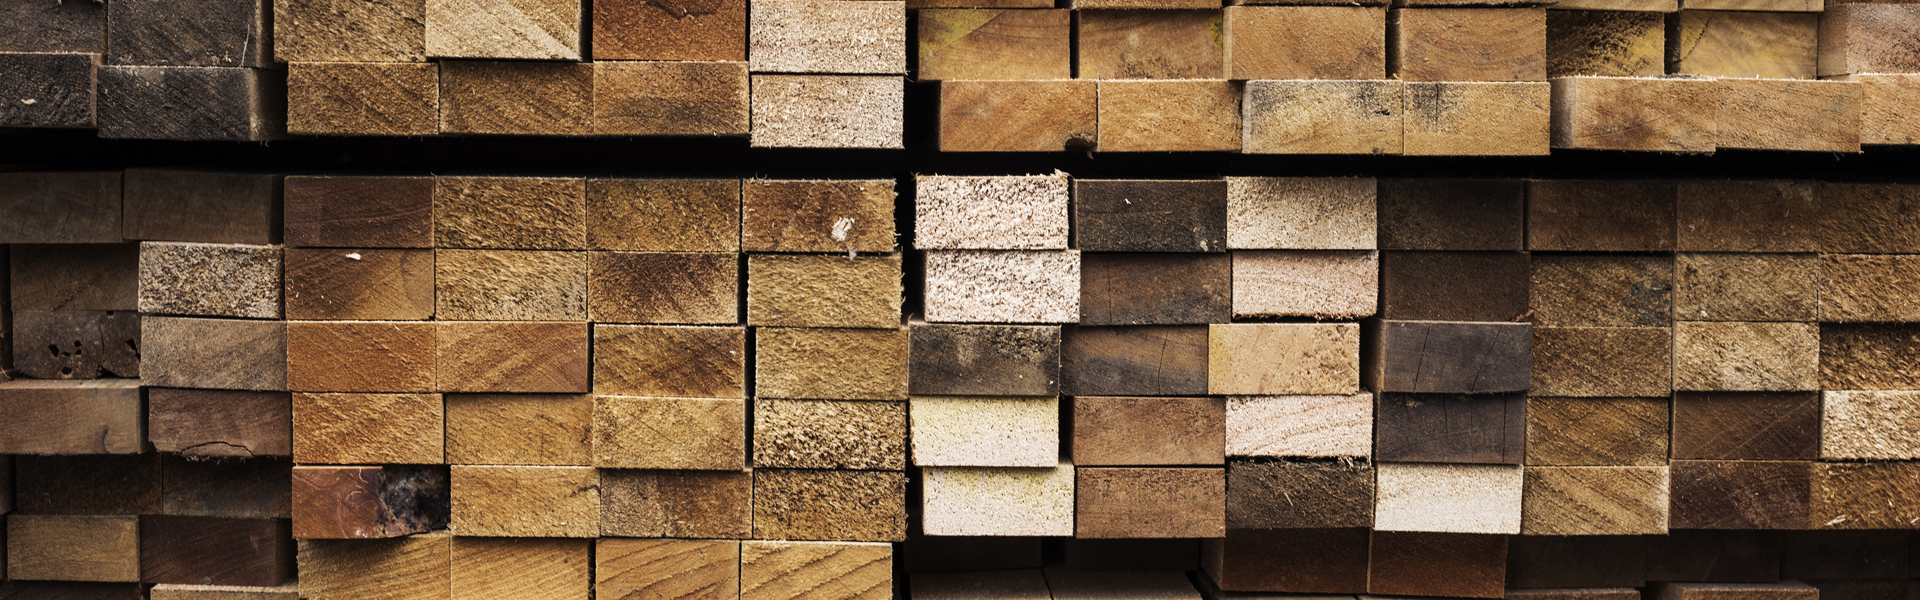 Accoya Wood Malaysia | Plywood Malaysia | Malaysia Sawn Timber